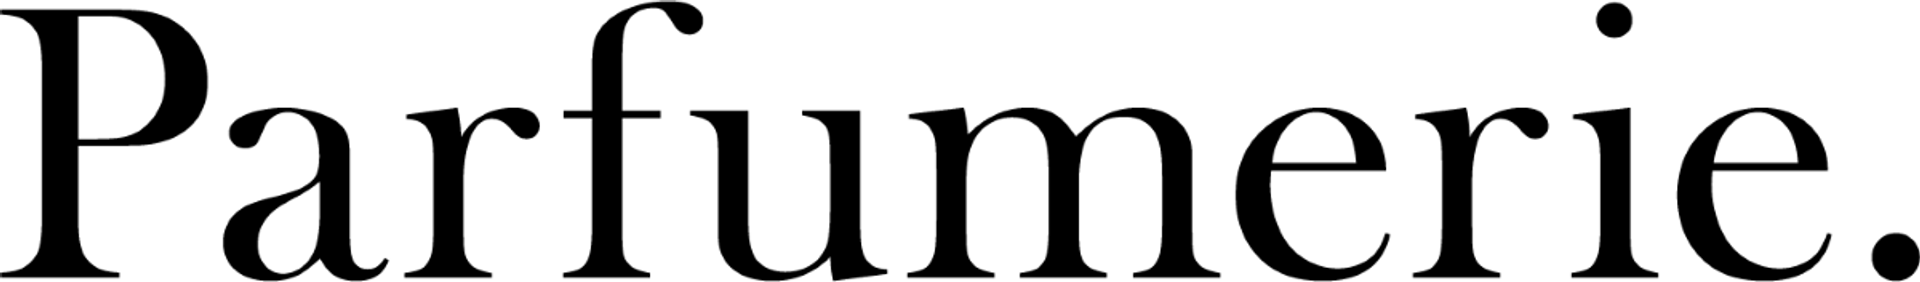 PARFUMERIE logo